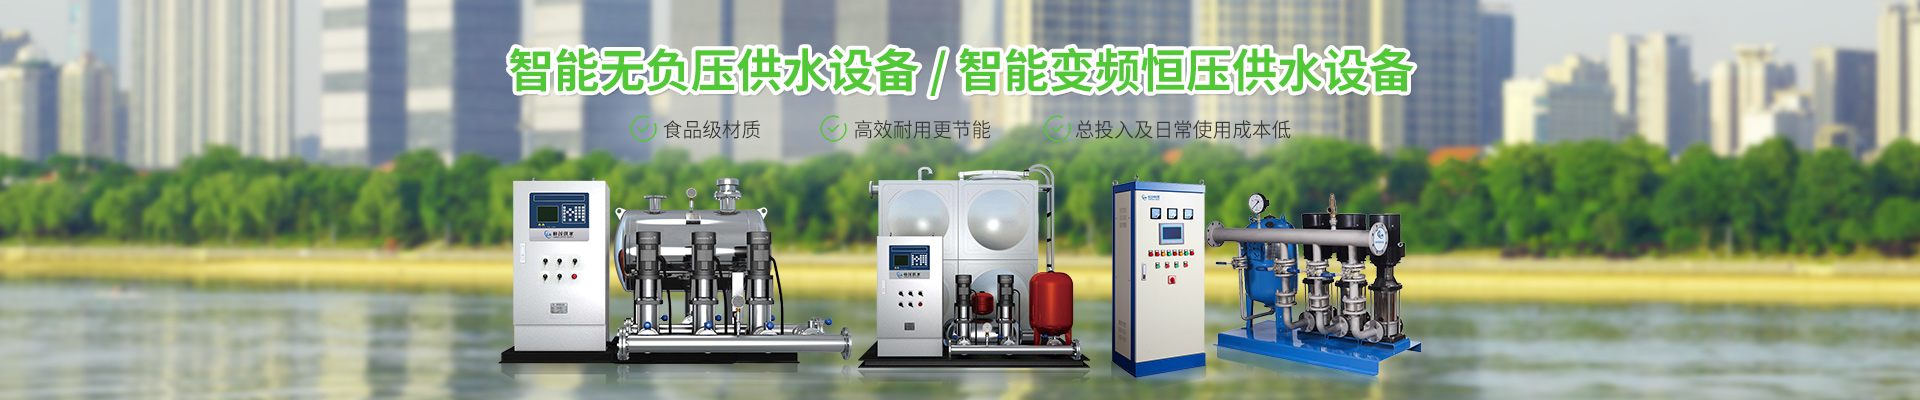 湖南林茂机电科技有限公司_长沙电气自动化设备研发|消防设备|泵类给排水设备|不锈钢水箱销售